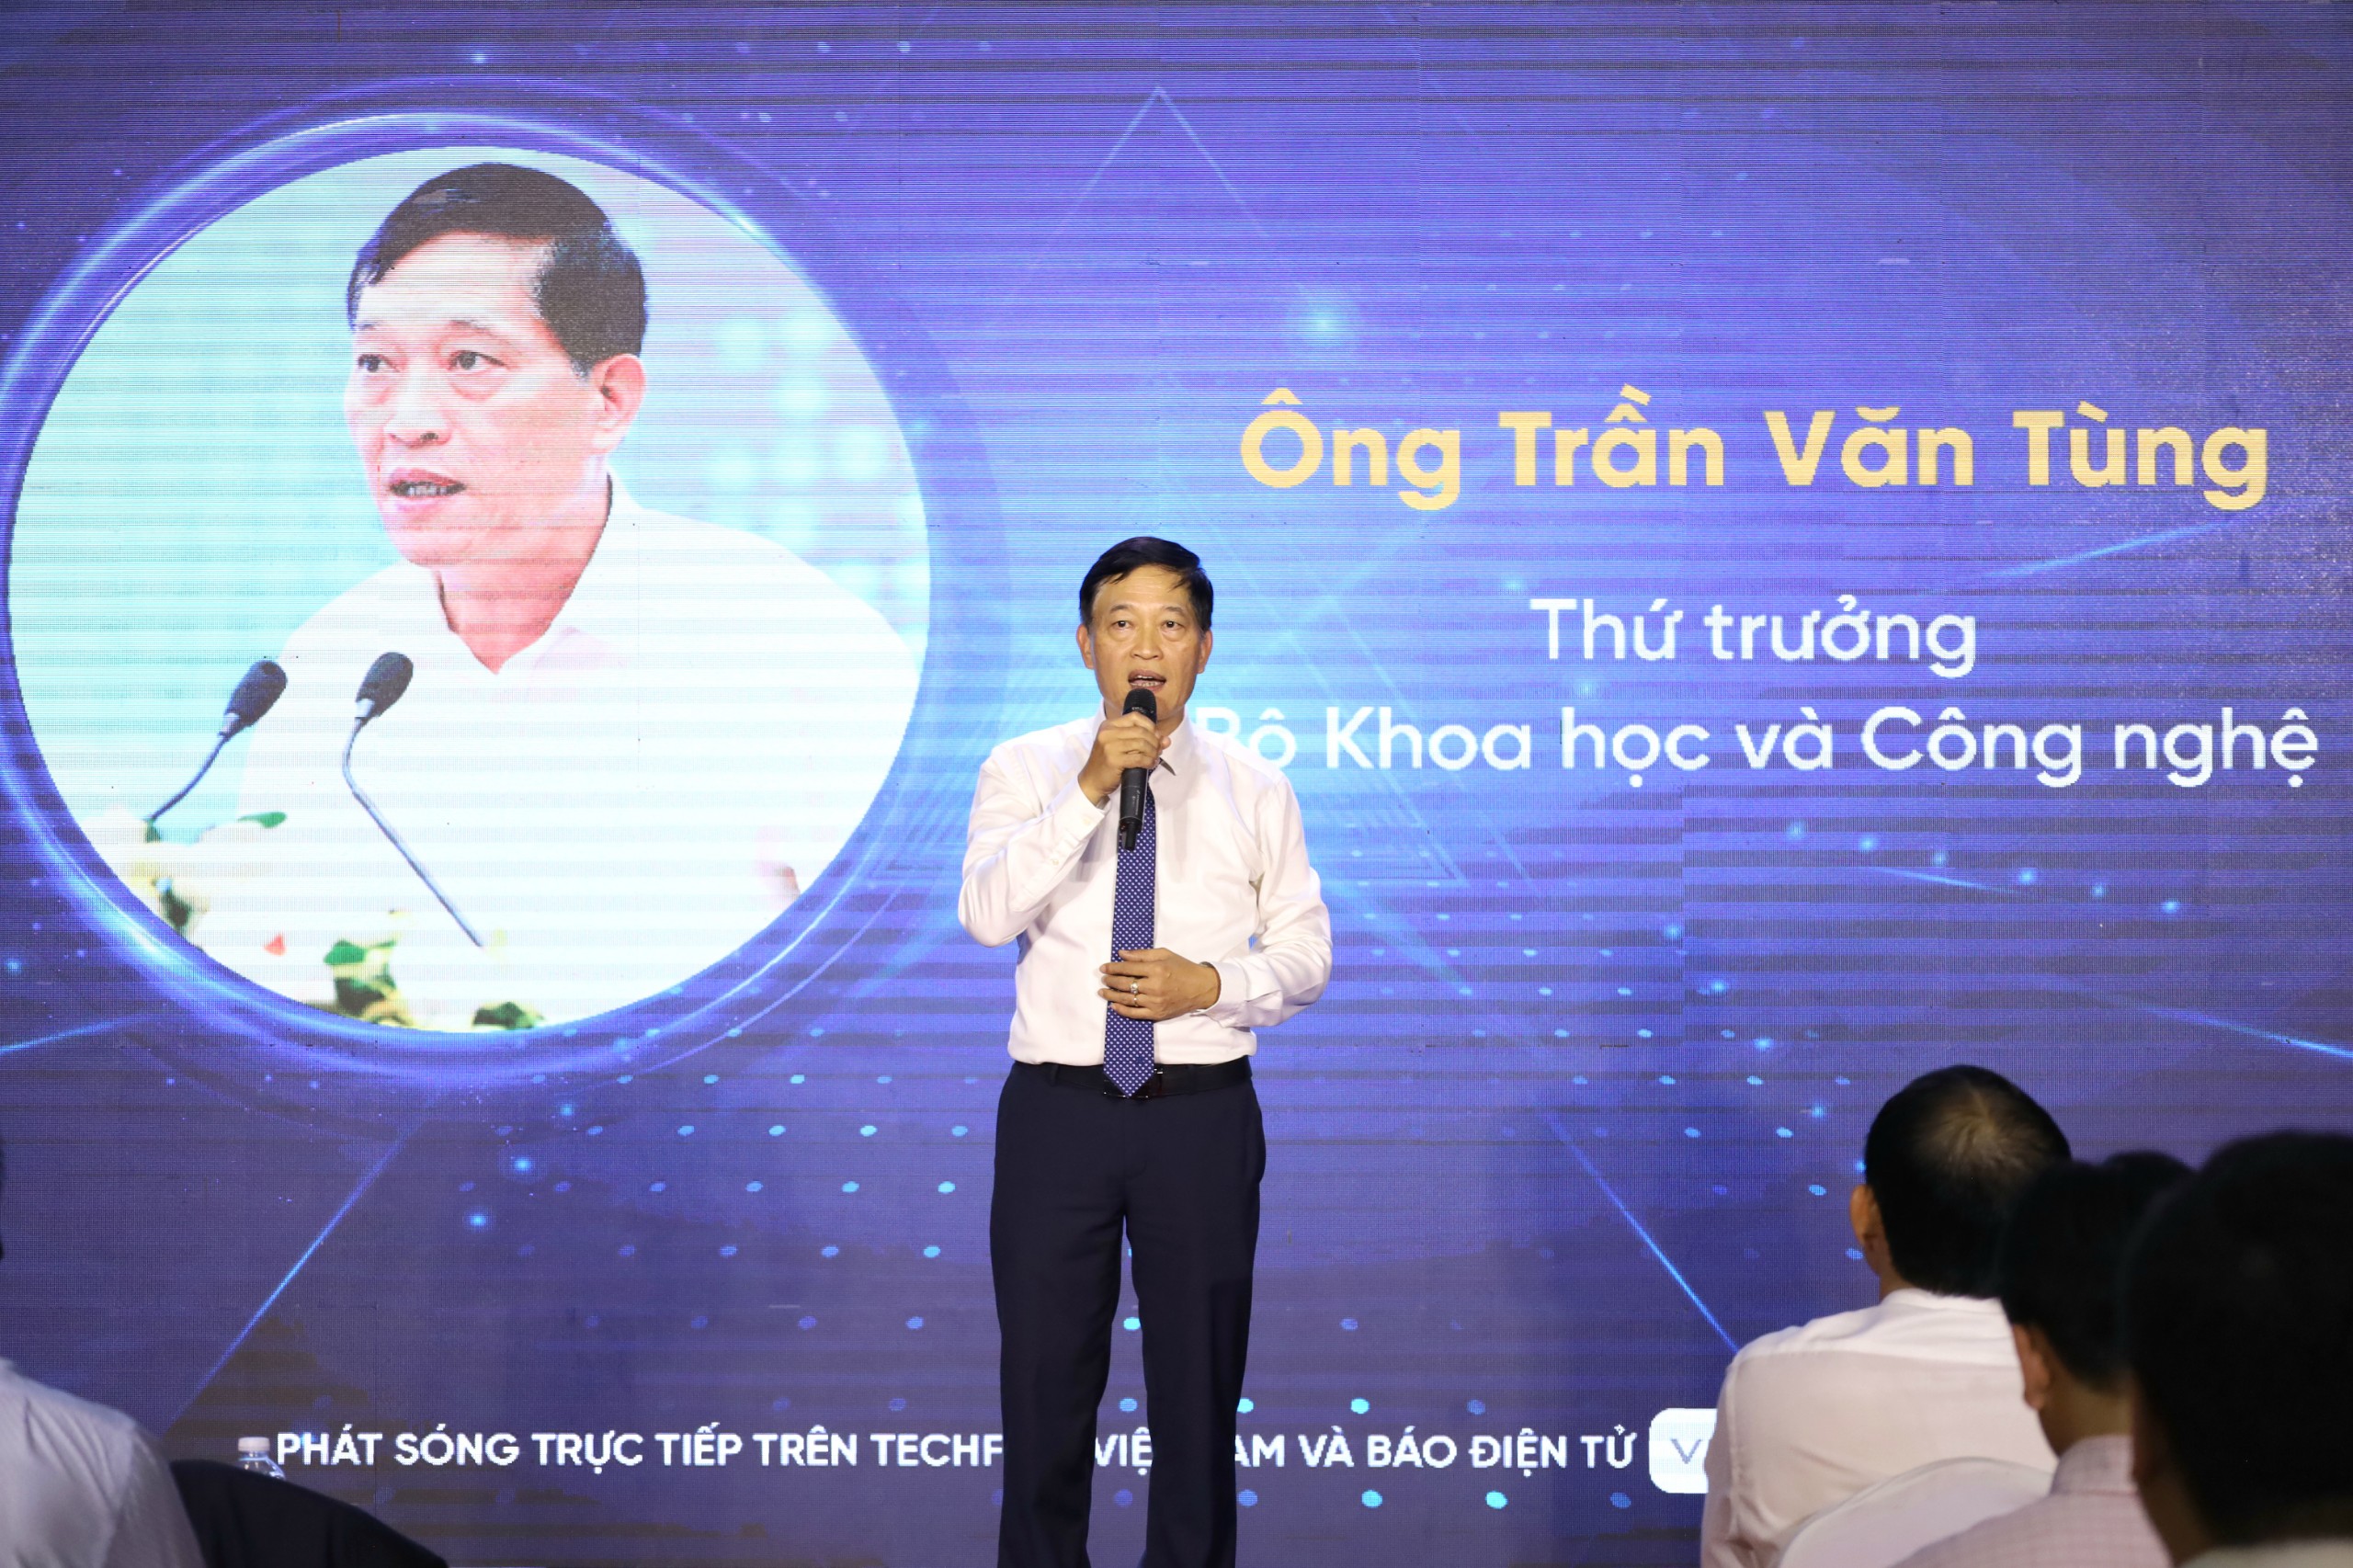 Ông Trần Văn Tùng - Thứ trưởng Bộ Khoa học & Công nghệ phát biểu tại Diễn đàn khởi nghiệp Đổi mới sáng tạo vùng ĐBSCL.